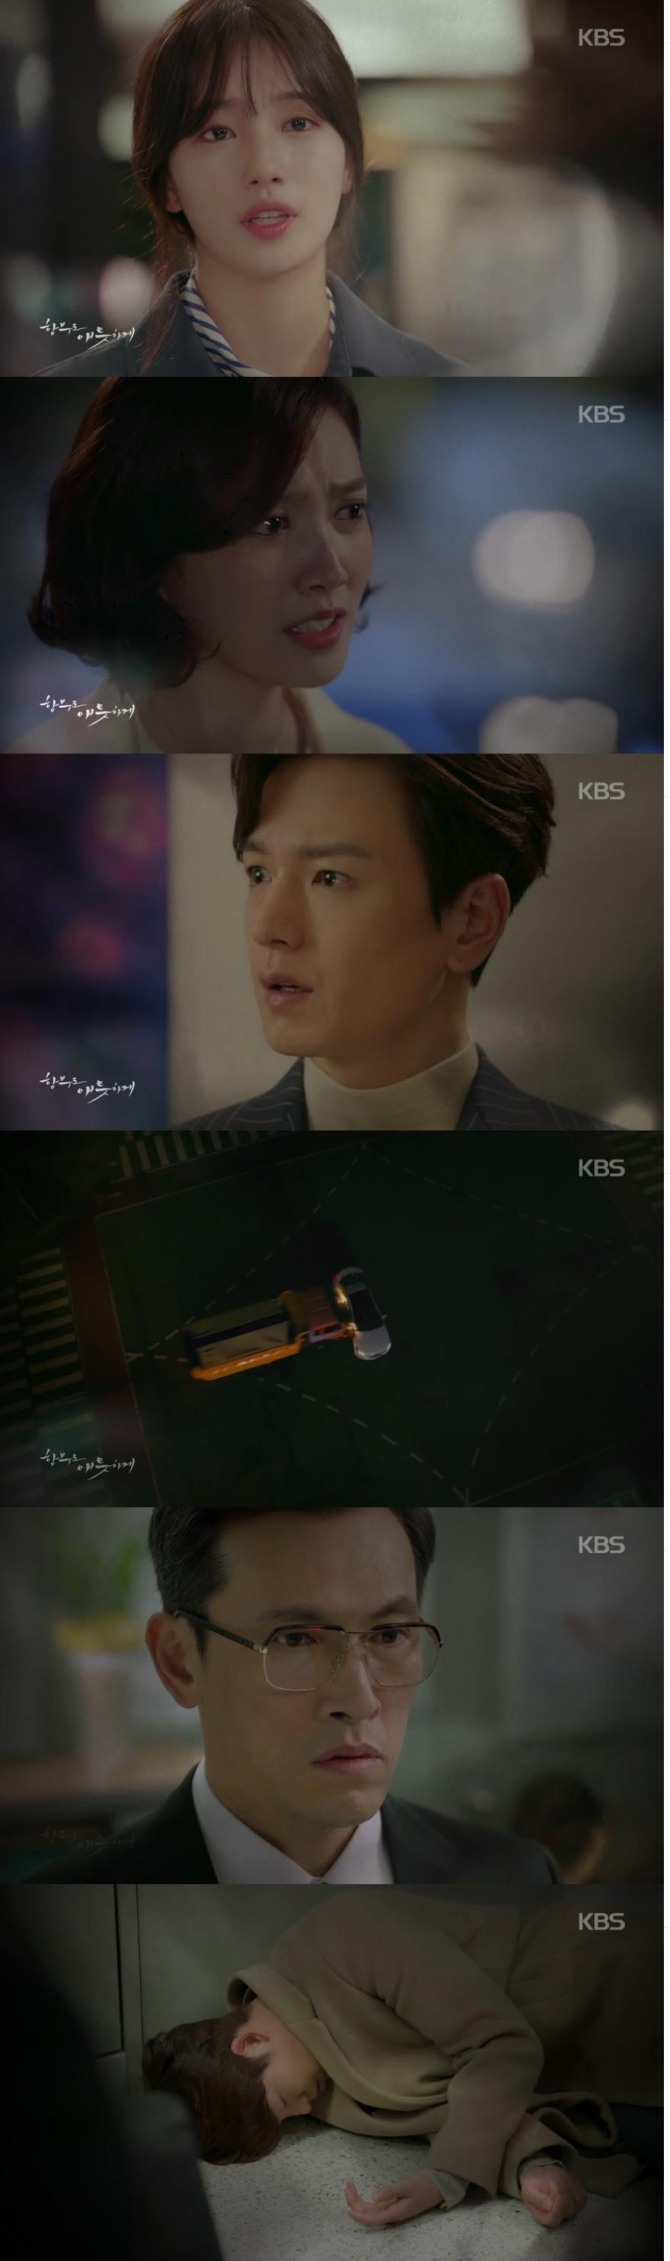 1일 밤 방송되는 KBS2 수목드라마 '함부로 애틋하게' 18회에서 신준영(김우빈)은 마약투약 혐의로 체포되고 노을(수지)은 뺑소니 사고의 모든 진실을 알게 되는 장면이 그려진다./사진=KBS2 영상 캡처